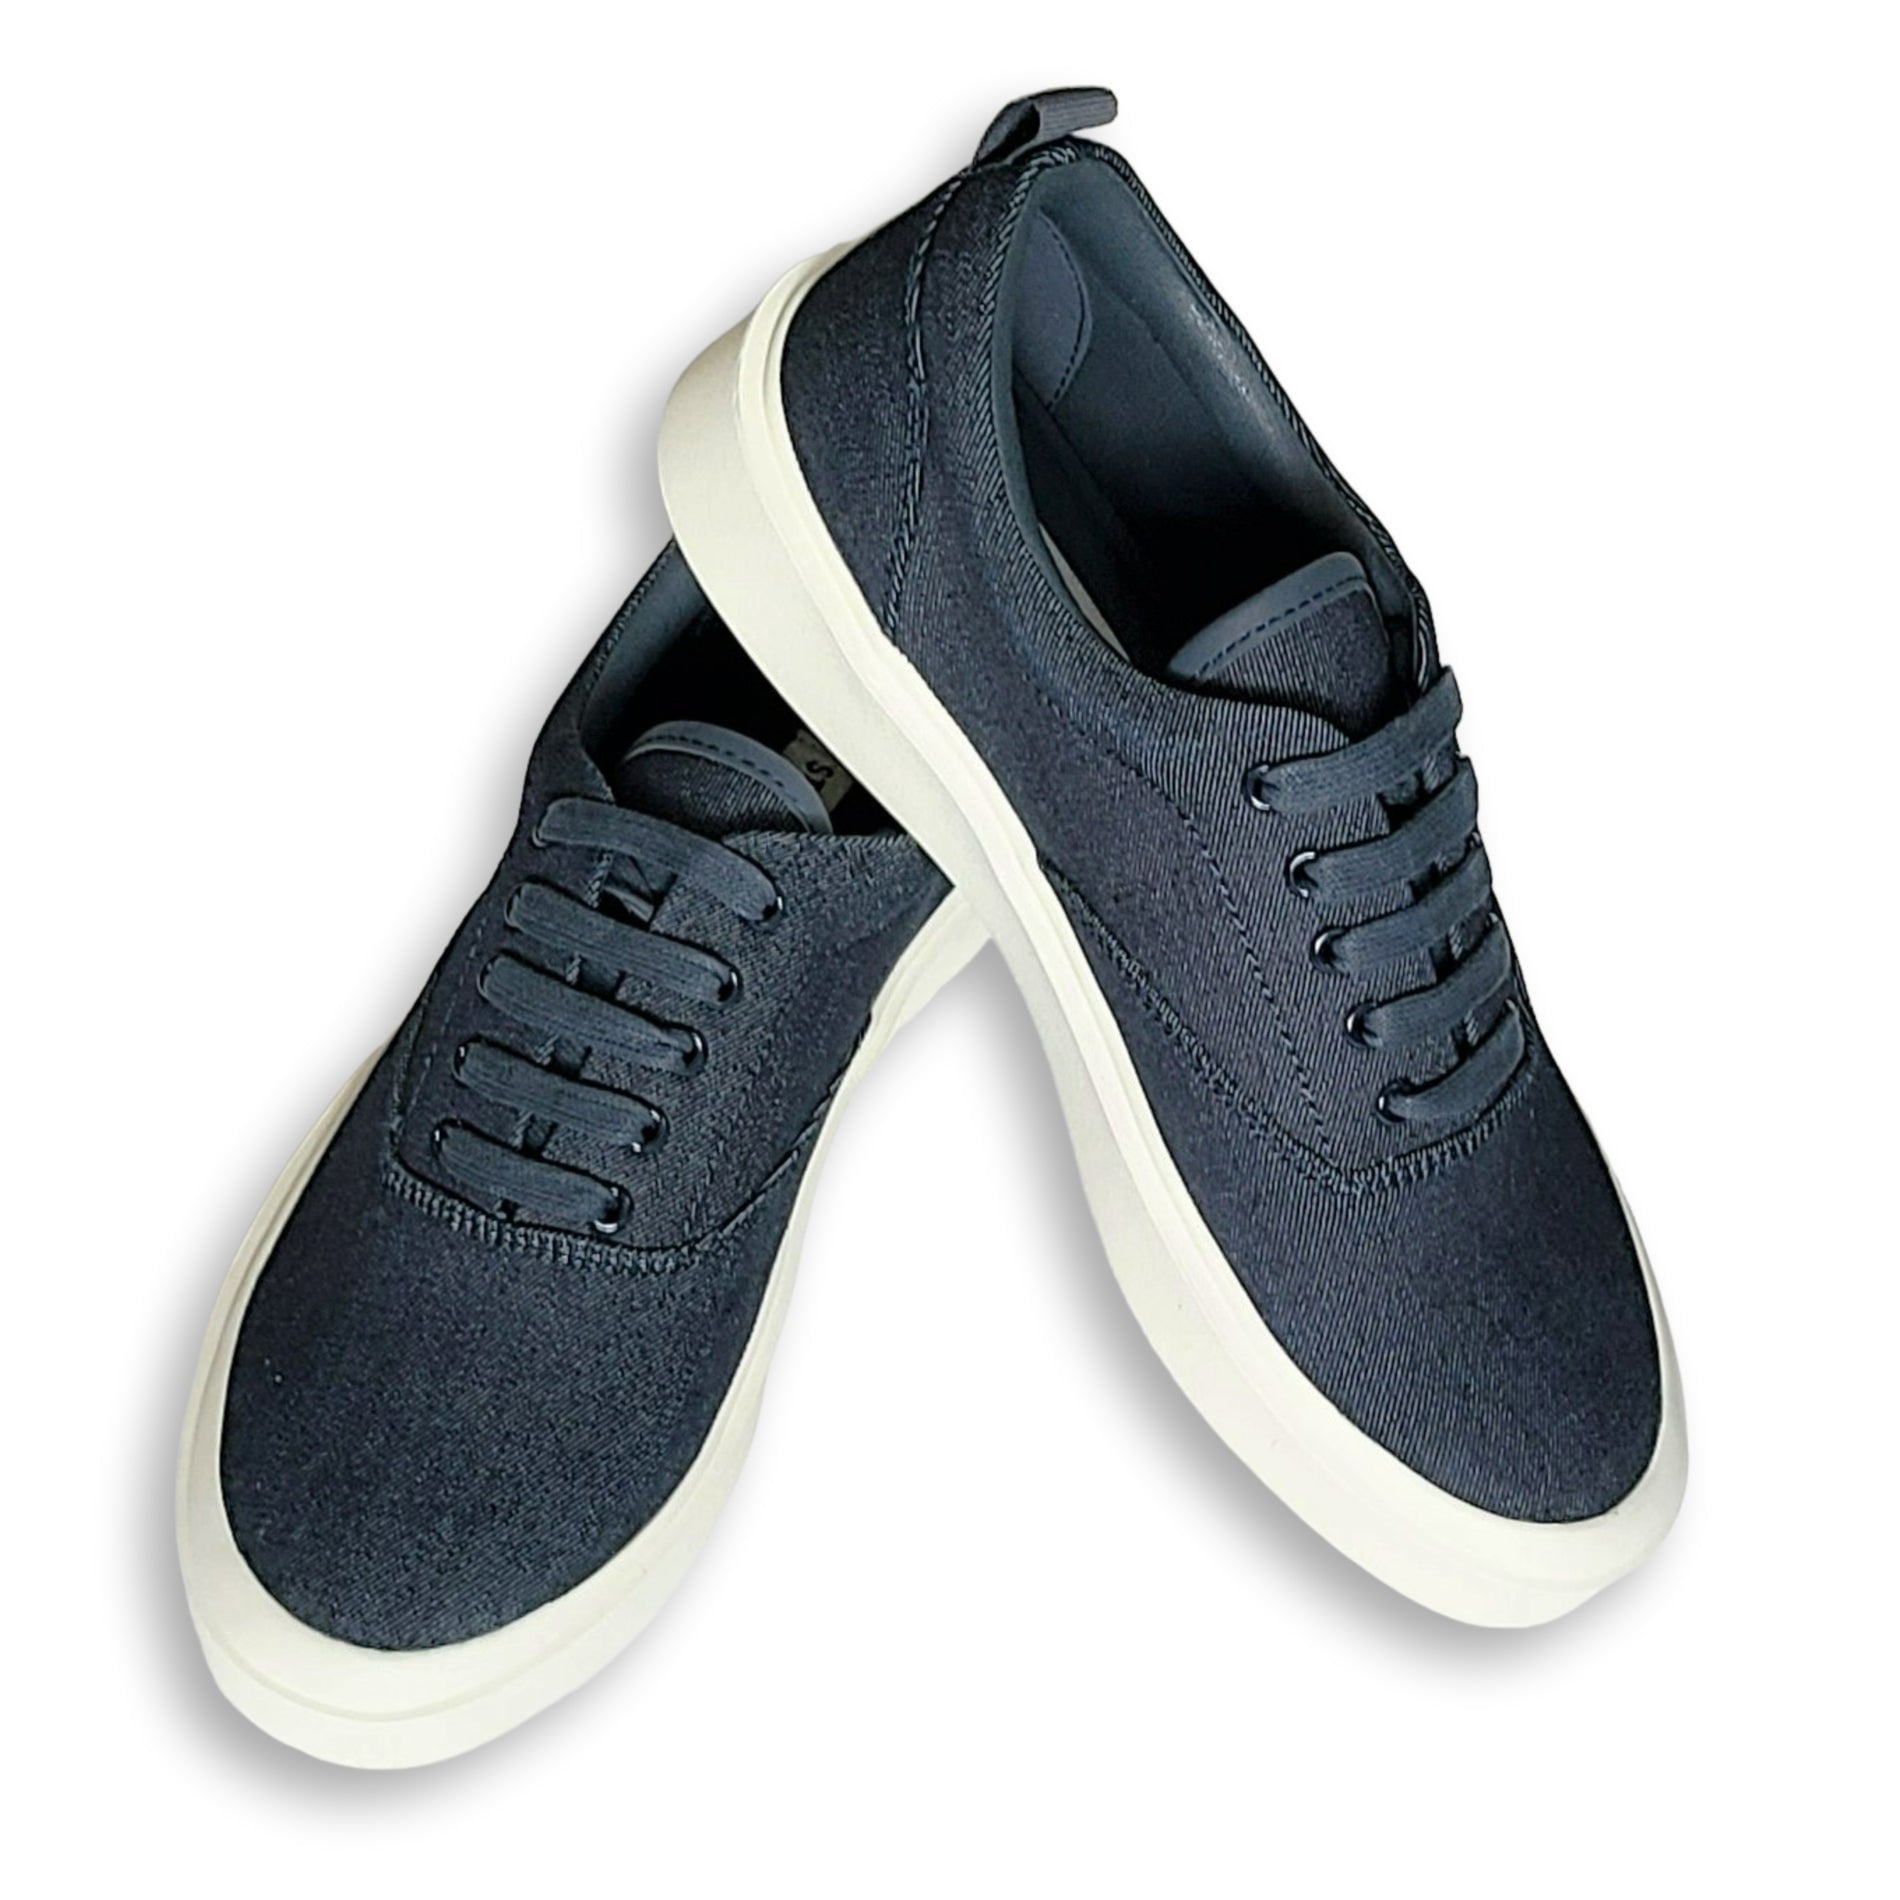 Steve Madden | Shoes | Steve Madden Blue Sneakers | Poshmark